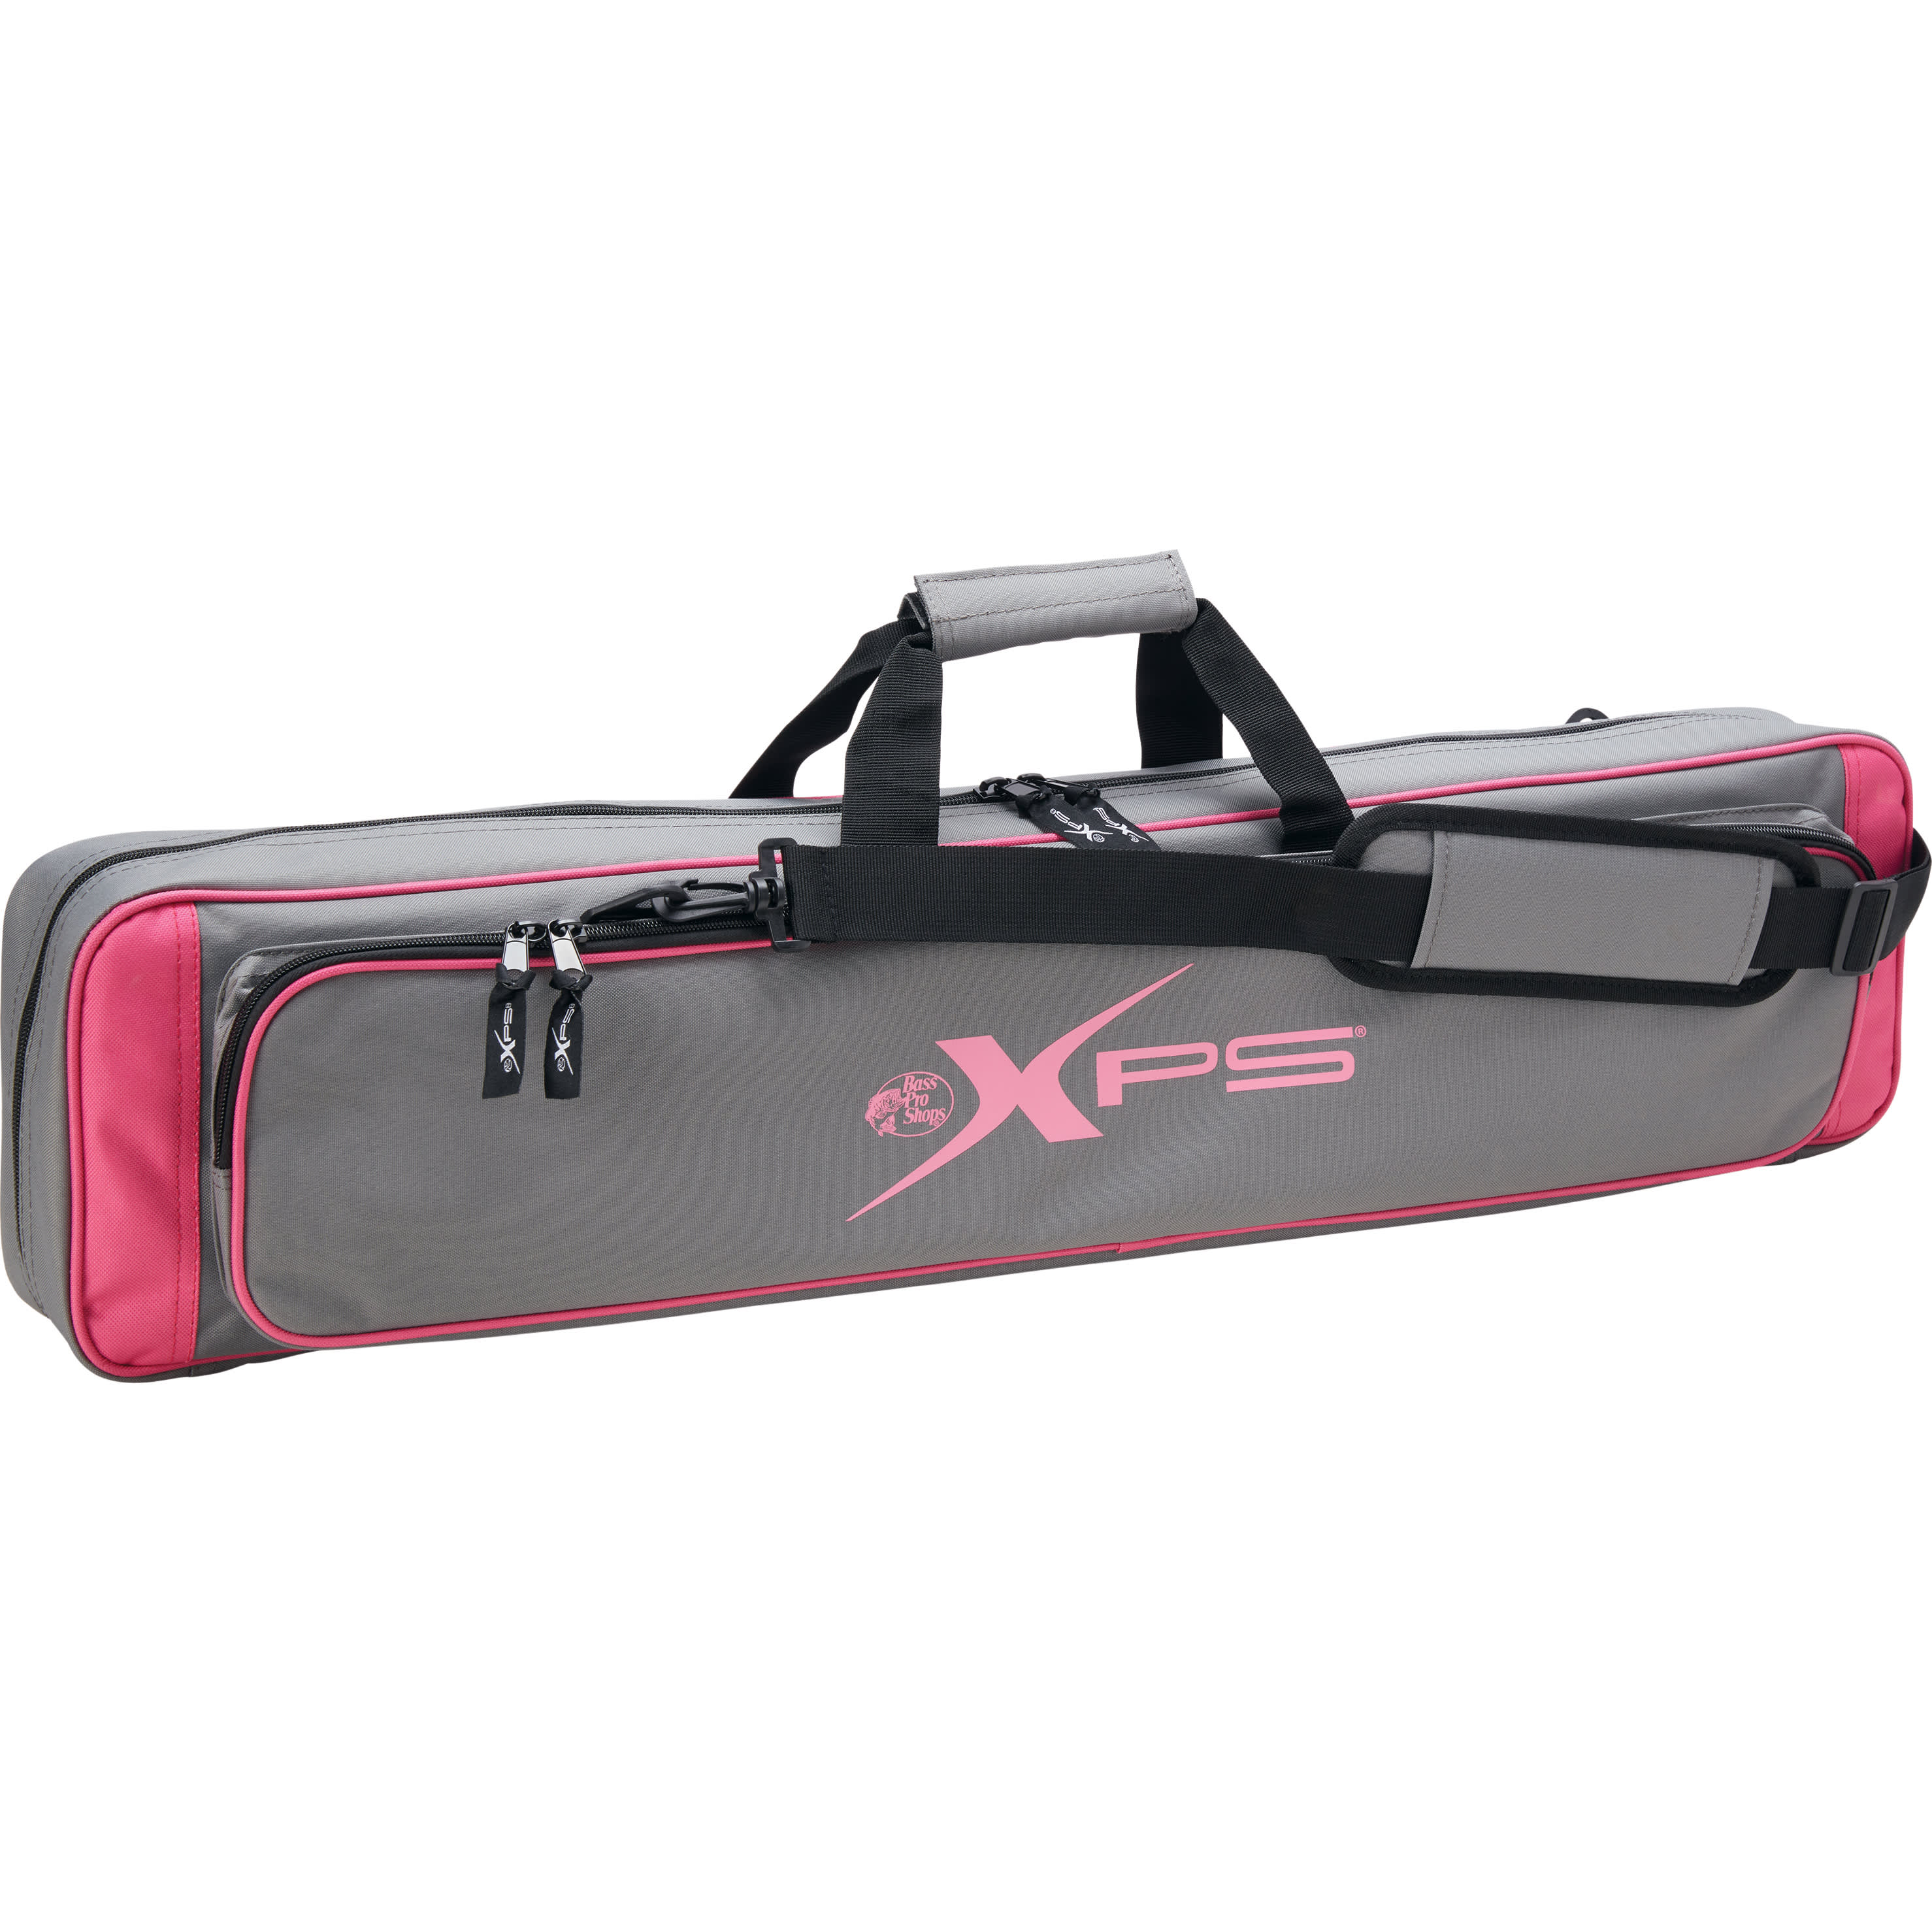 Bass Pro Shops XPS 6-Rod Ice Case - Cabelas - XPS - Storage 